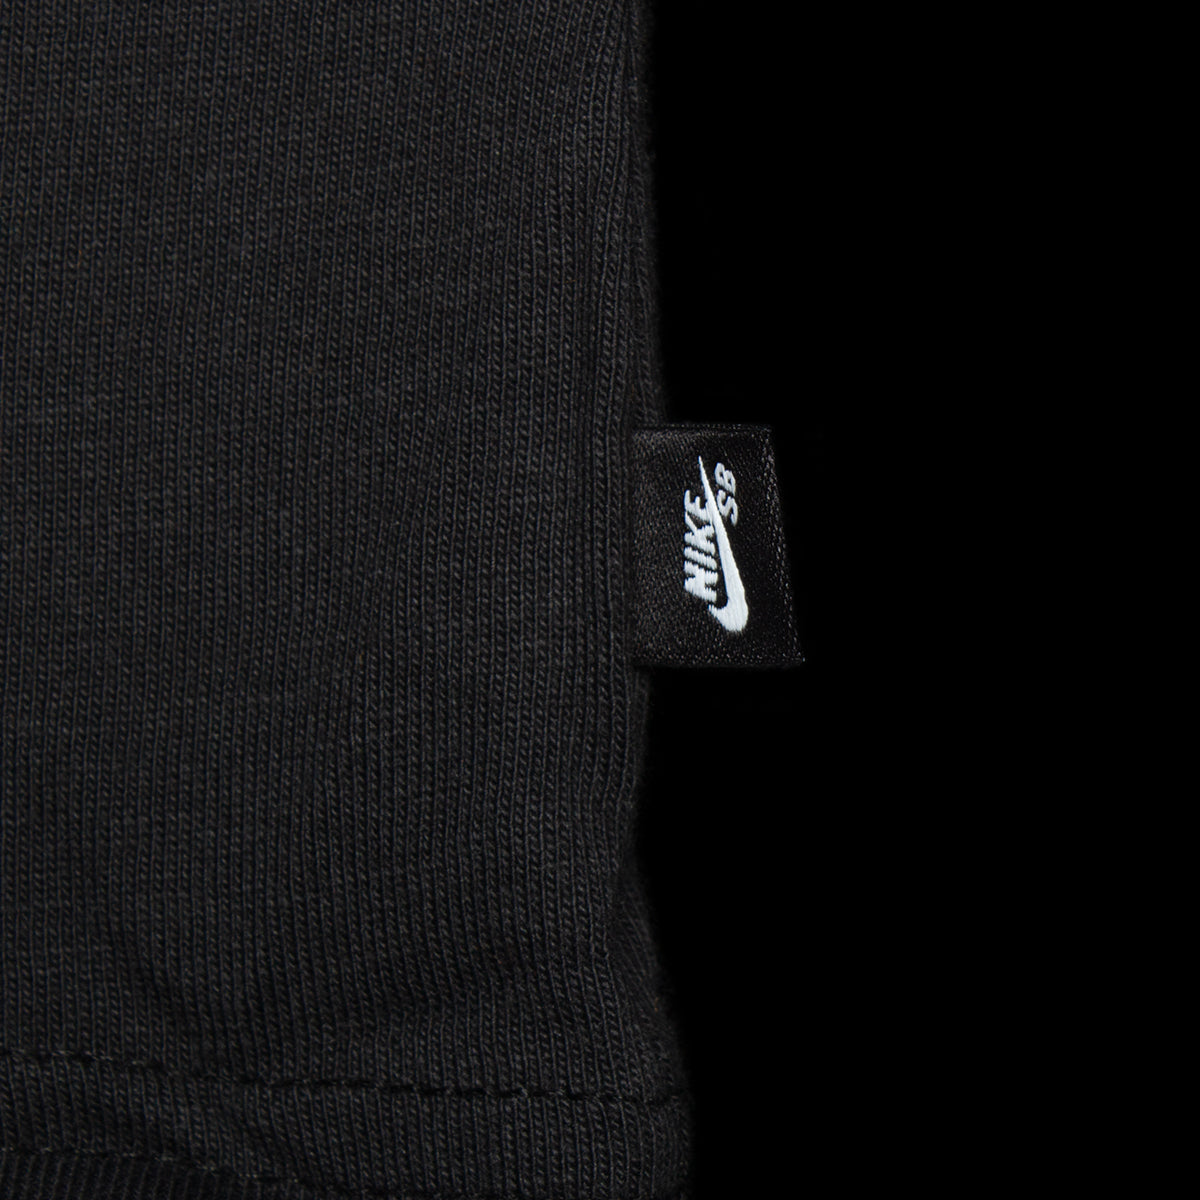 Nike SB | Video T-Shirt Style # FJ1143-010 Color : Black